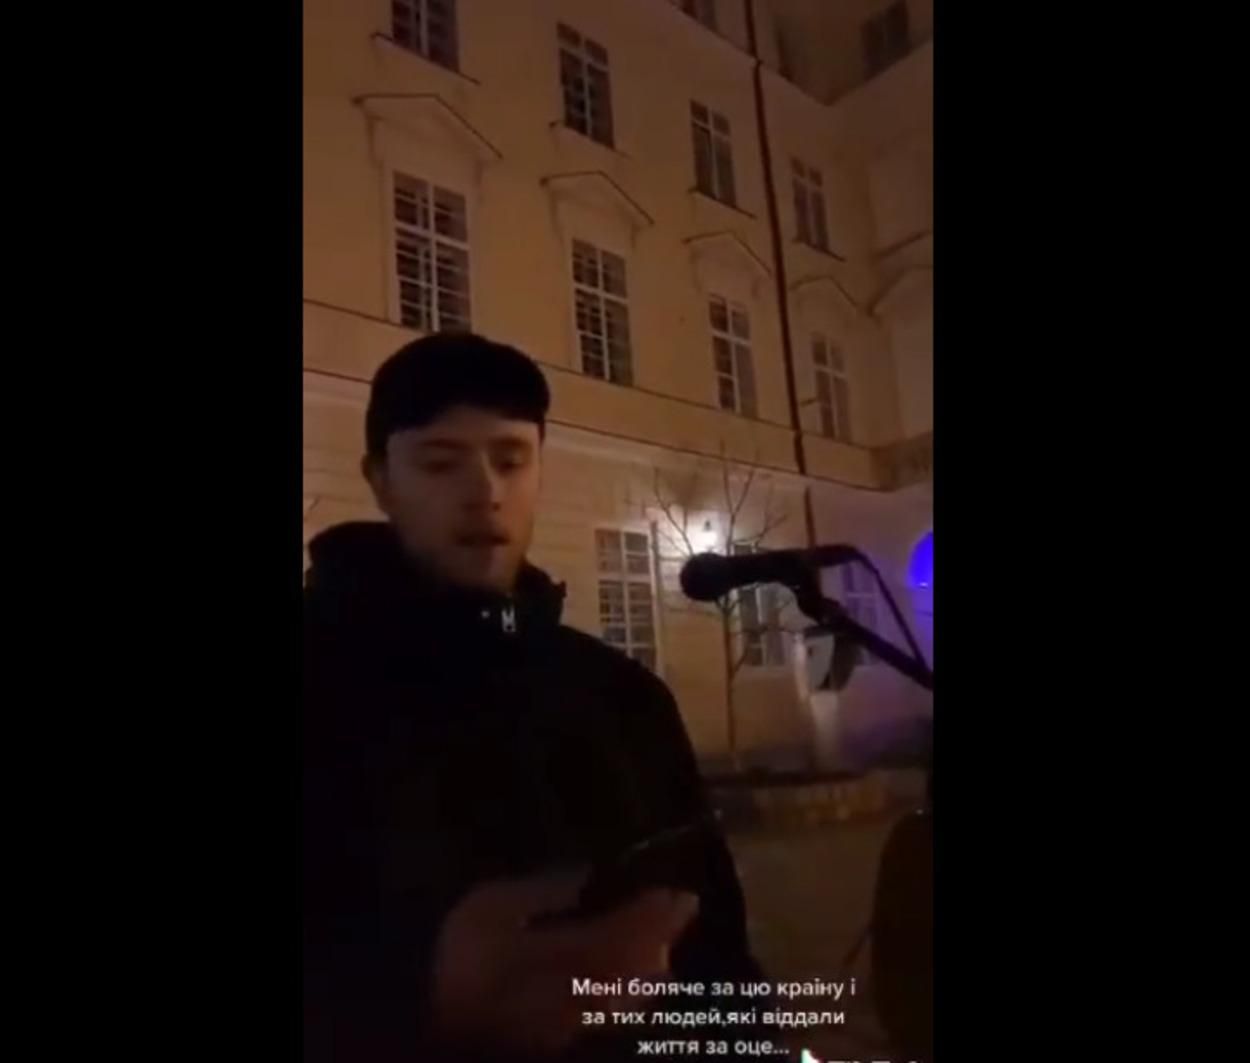 Орали песни на русском: во Львове прохожие избили уличных музыкантов - видео 